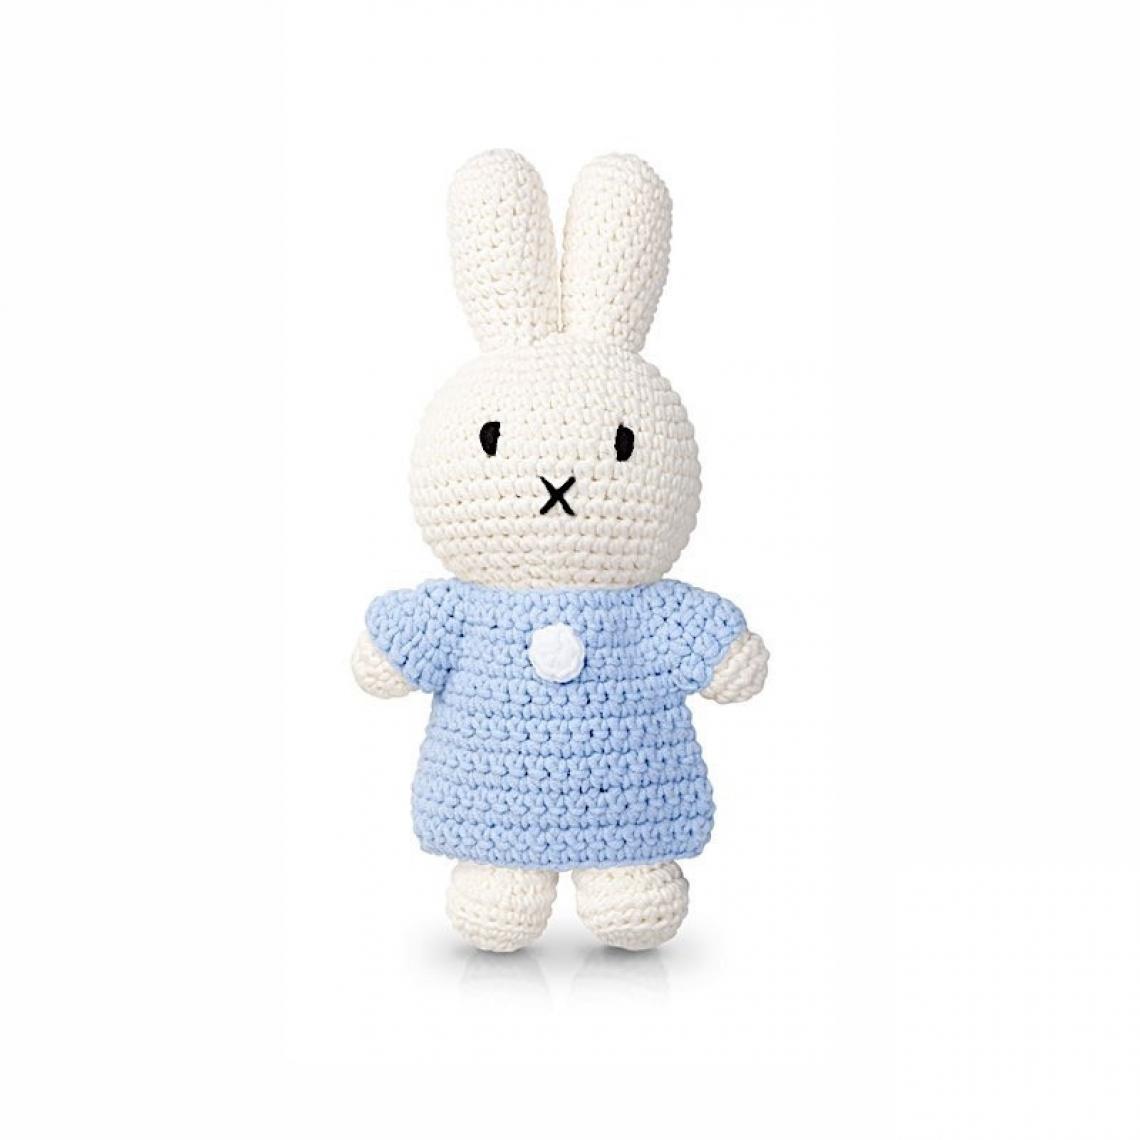 Ac-Deco - Peluche Miffy en crochet - L 10 x l 5 x H 25 cm - Bleu pastel - Doudous